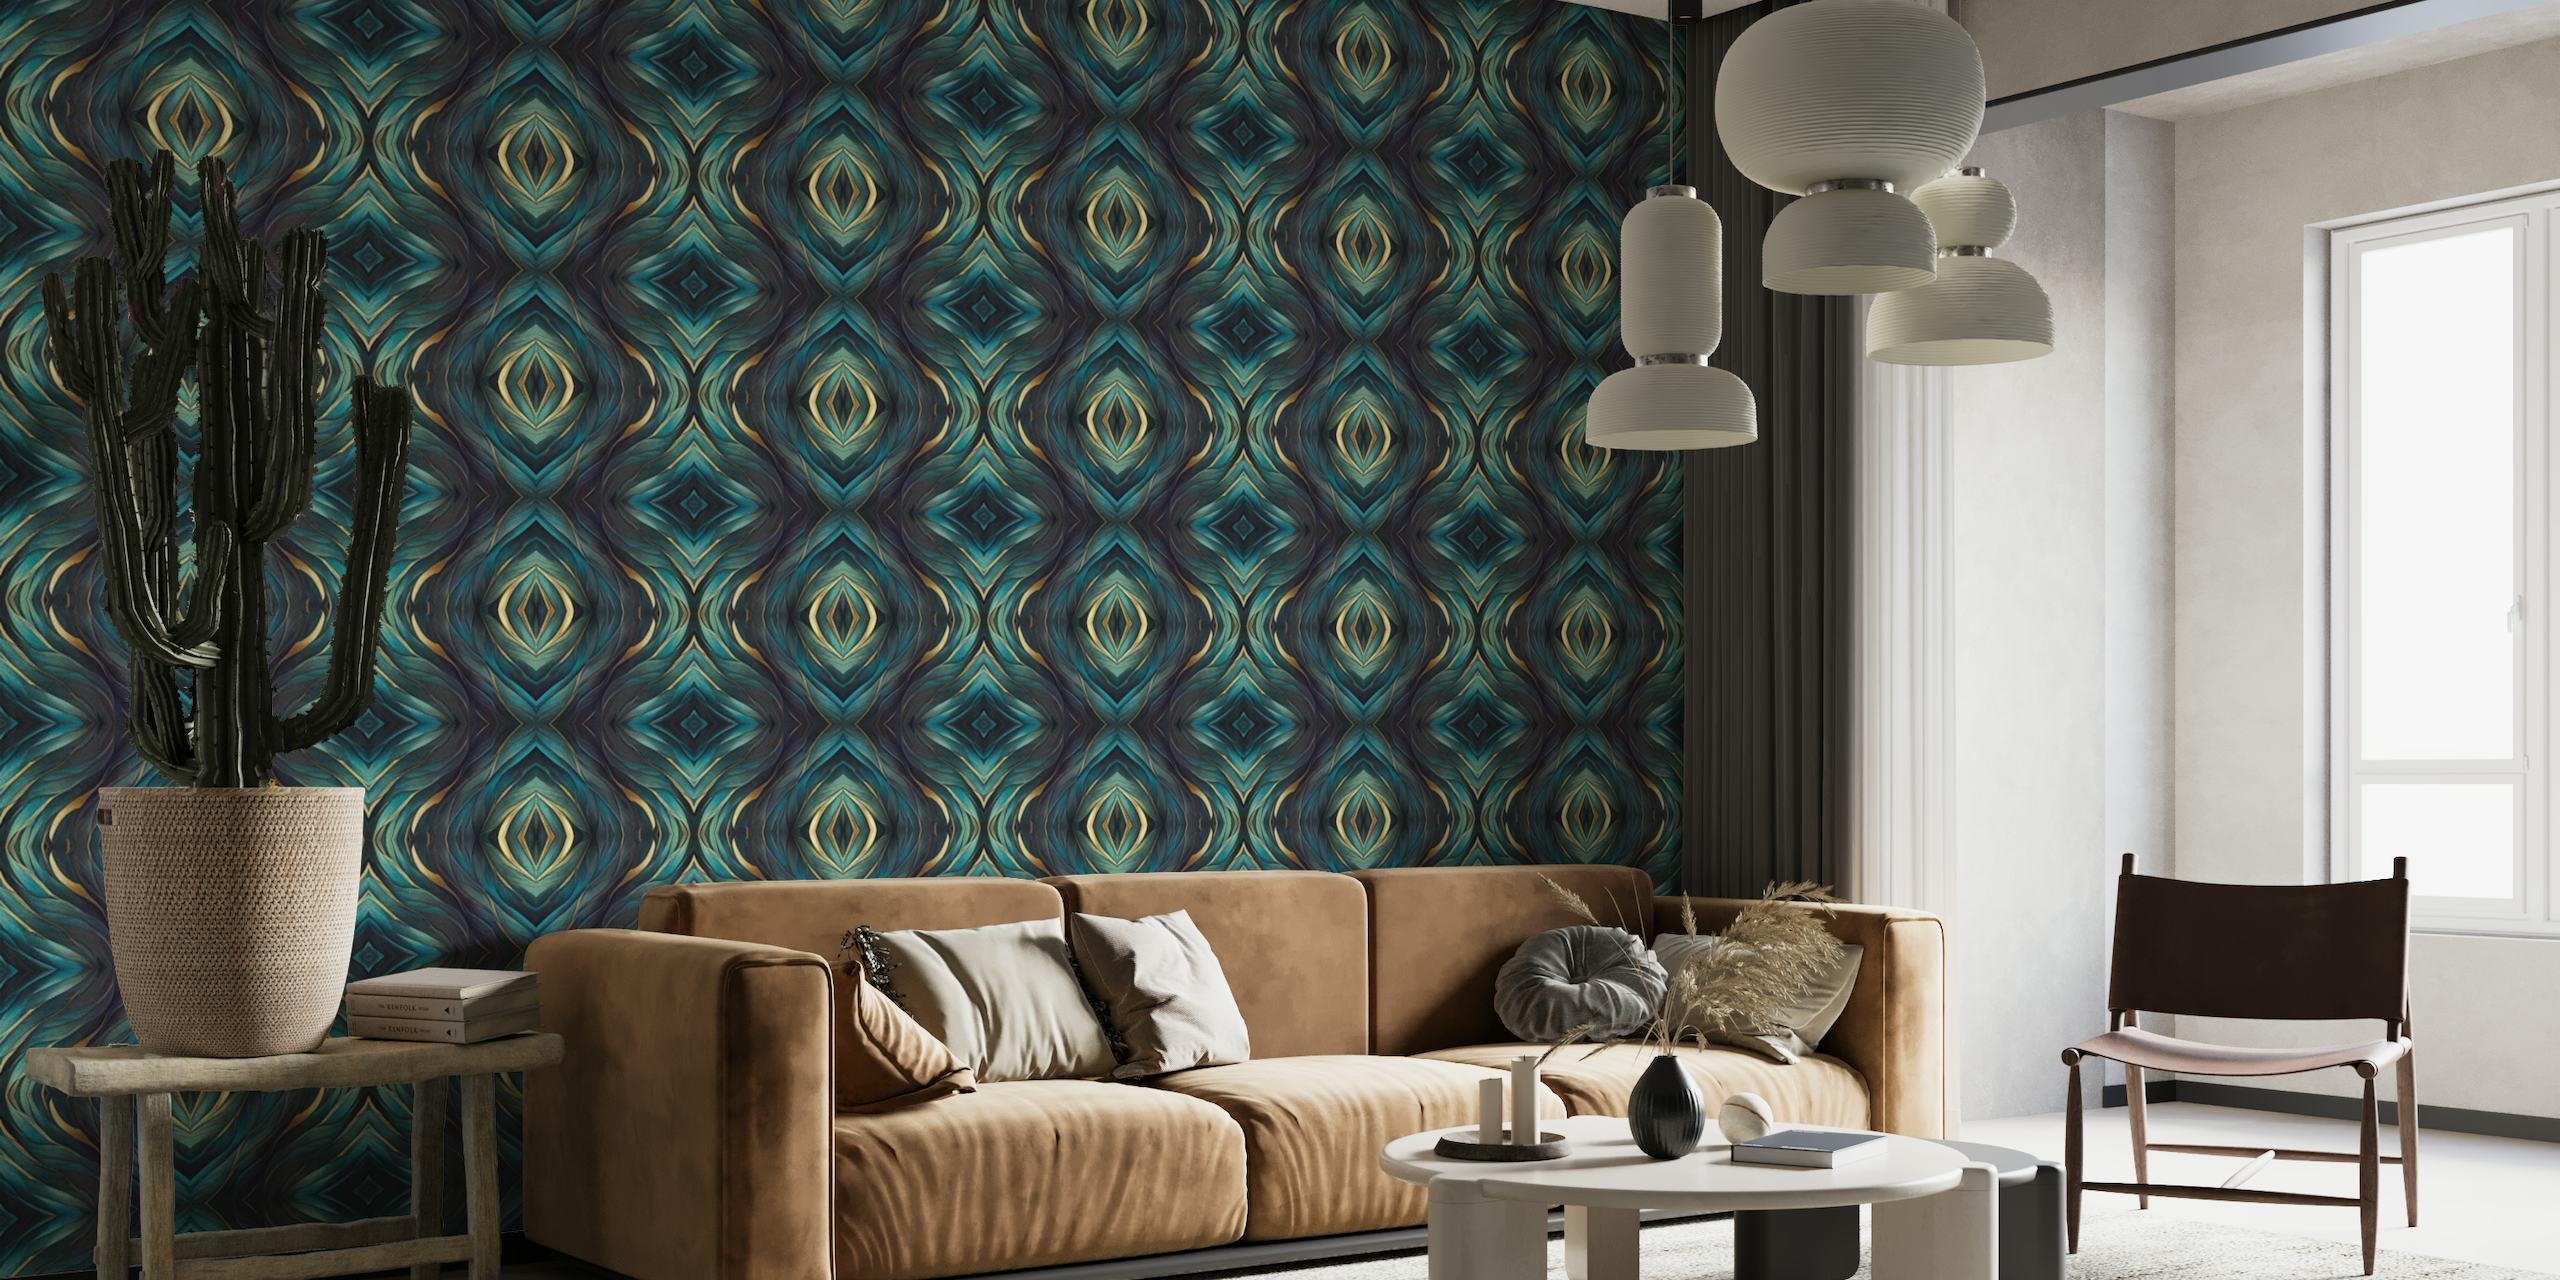 Artisanal Mediterranean Tile Design Teal Blue Gold tapeta